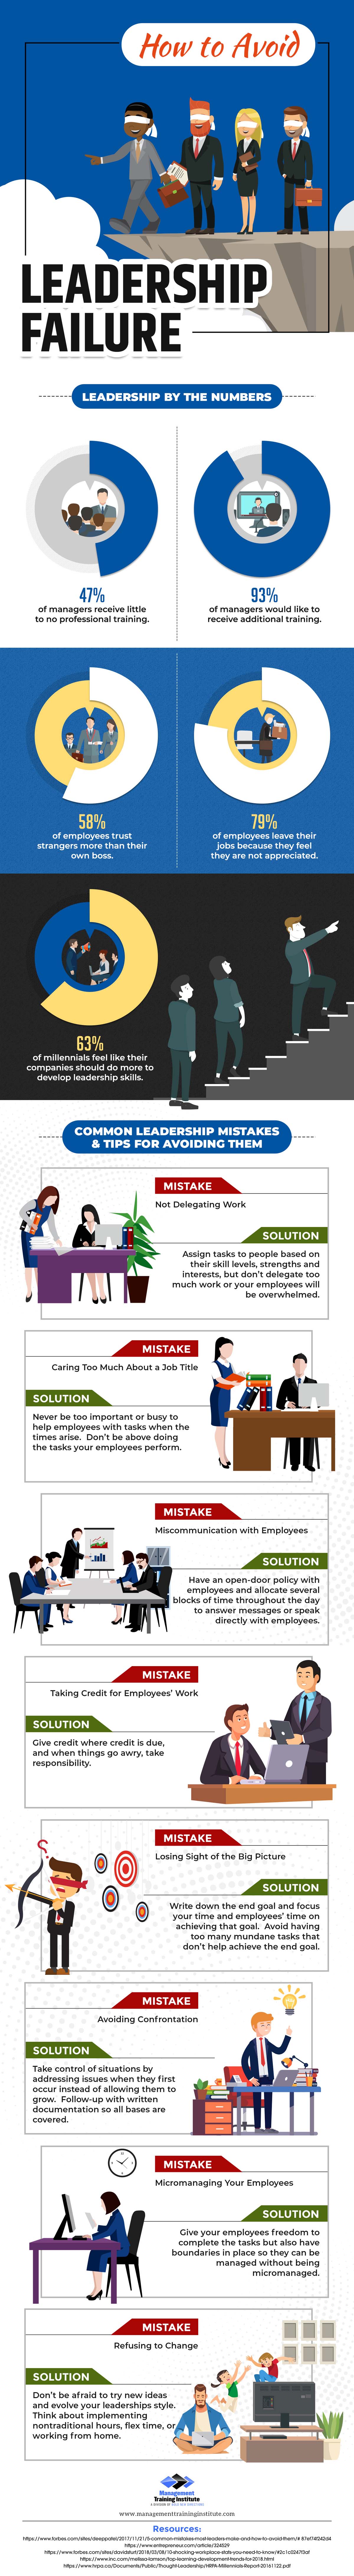 How to Avoid Leadership Failure